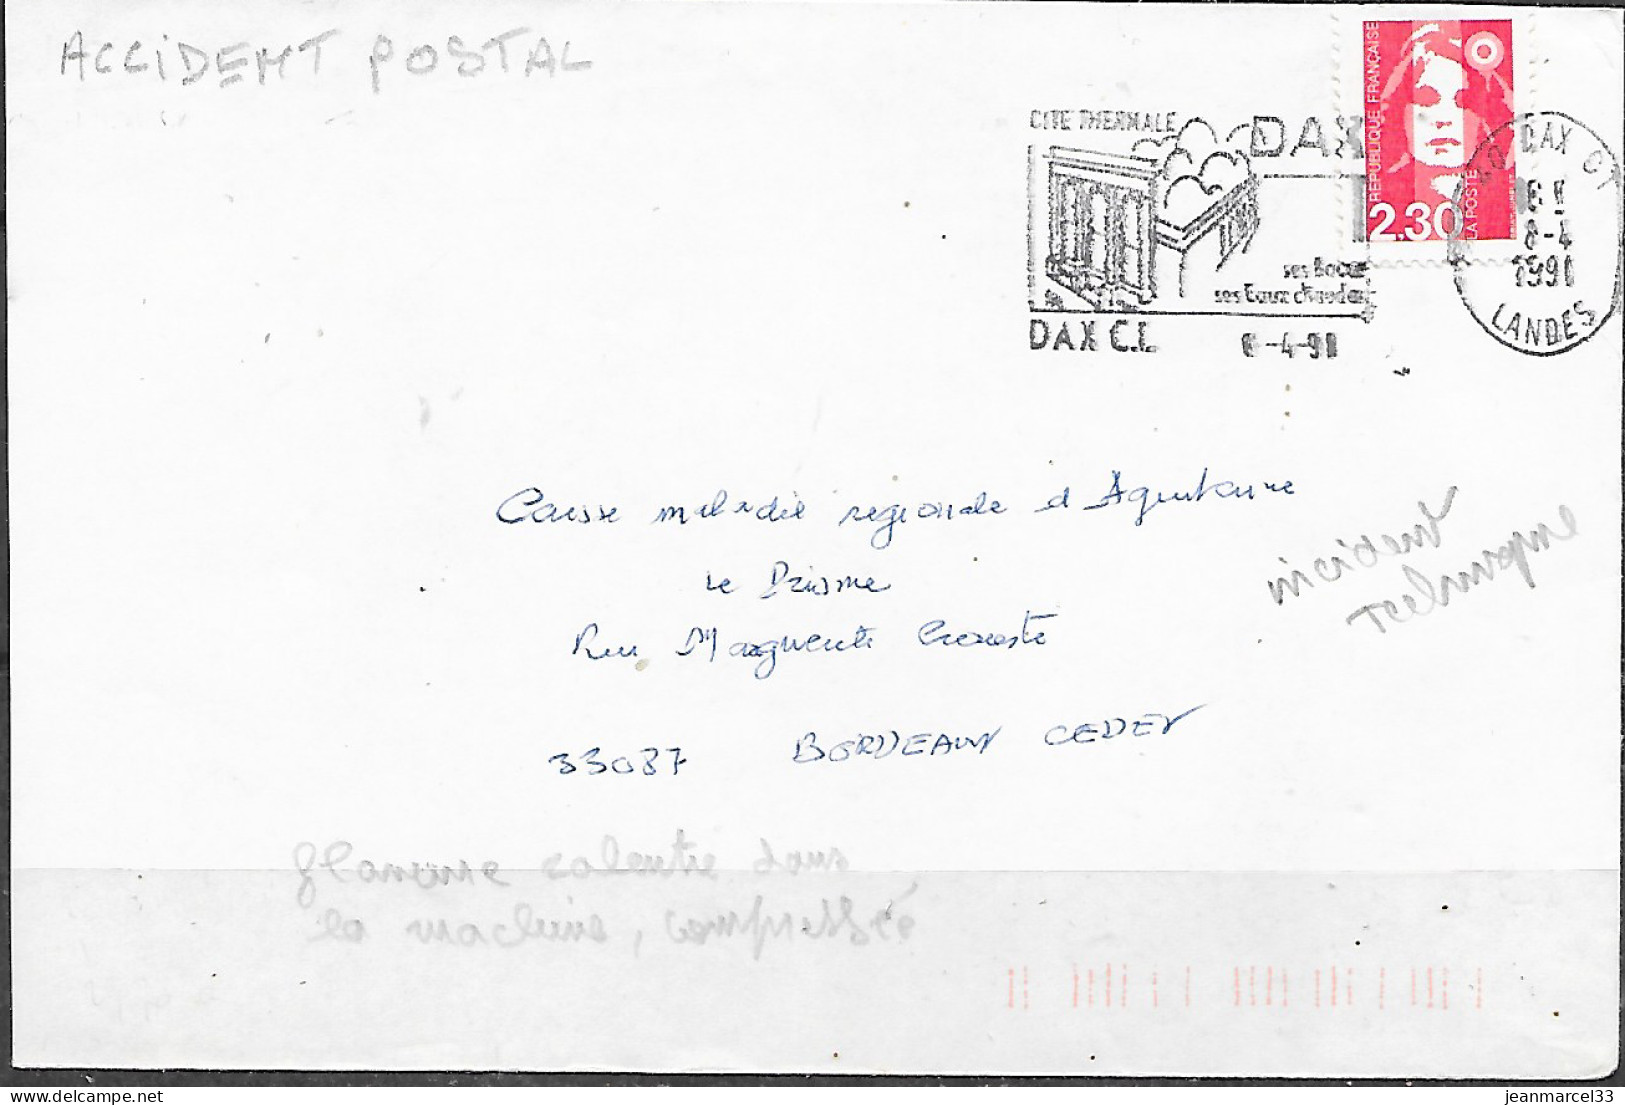 Accident Postal Flamme Compressé Dan La Machine Dax CT Du 8-4 91 Flamme Curieuse - Lettres & Documents